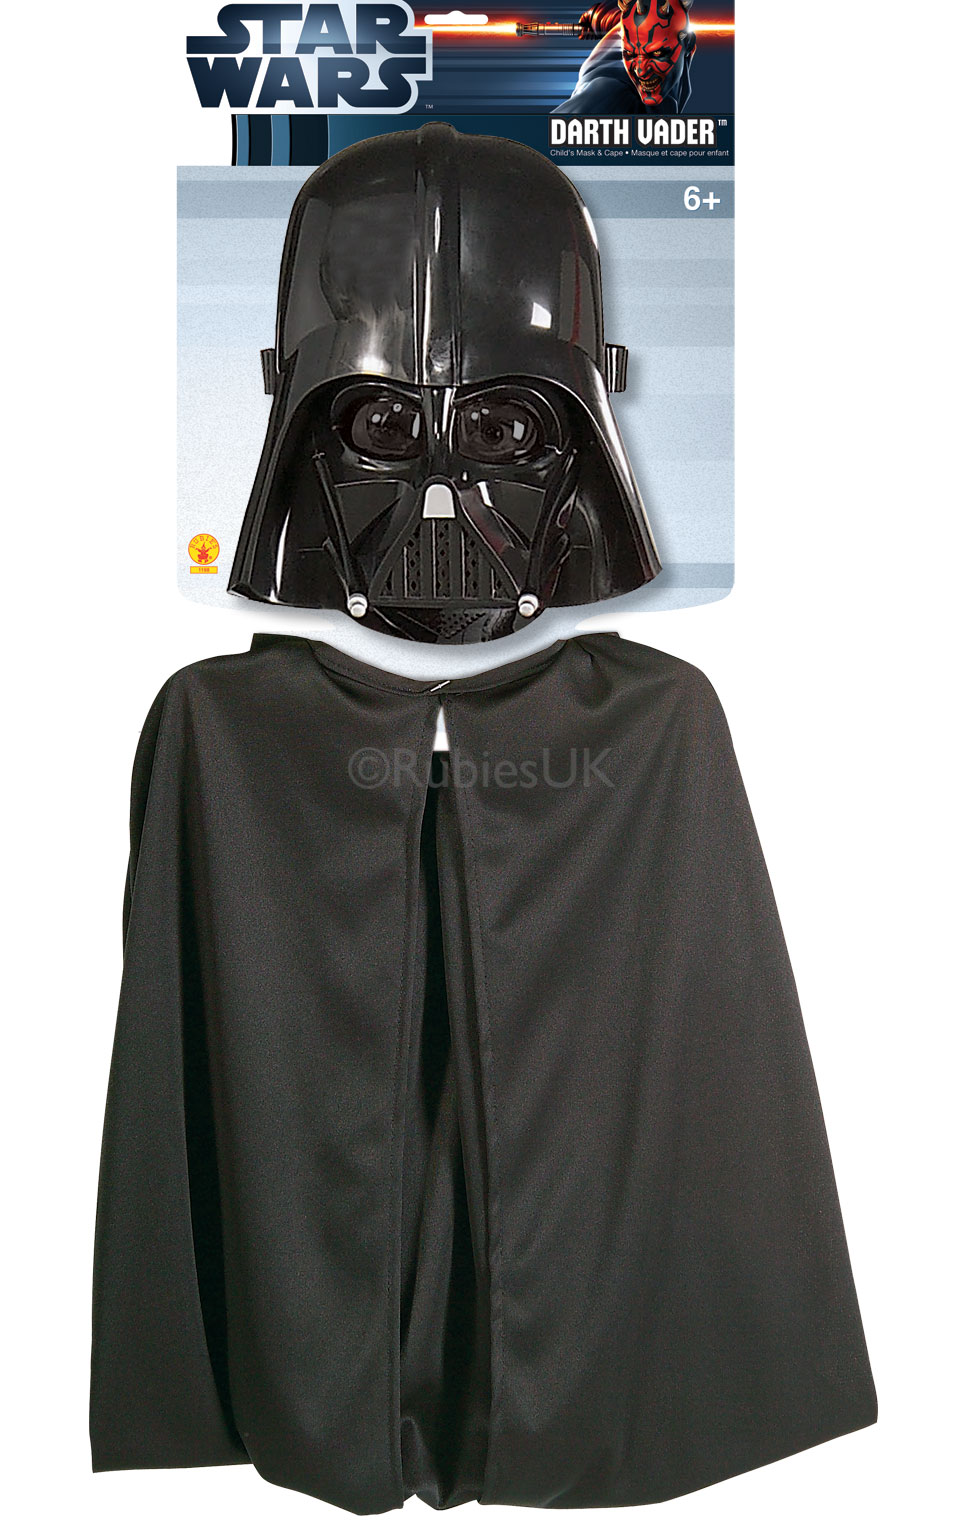 Billede af Star Wars Darth Vader kappe og maske sæt